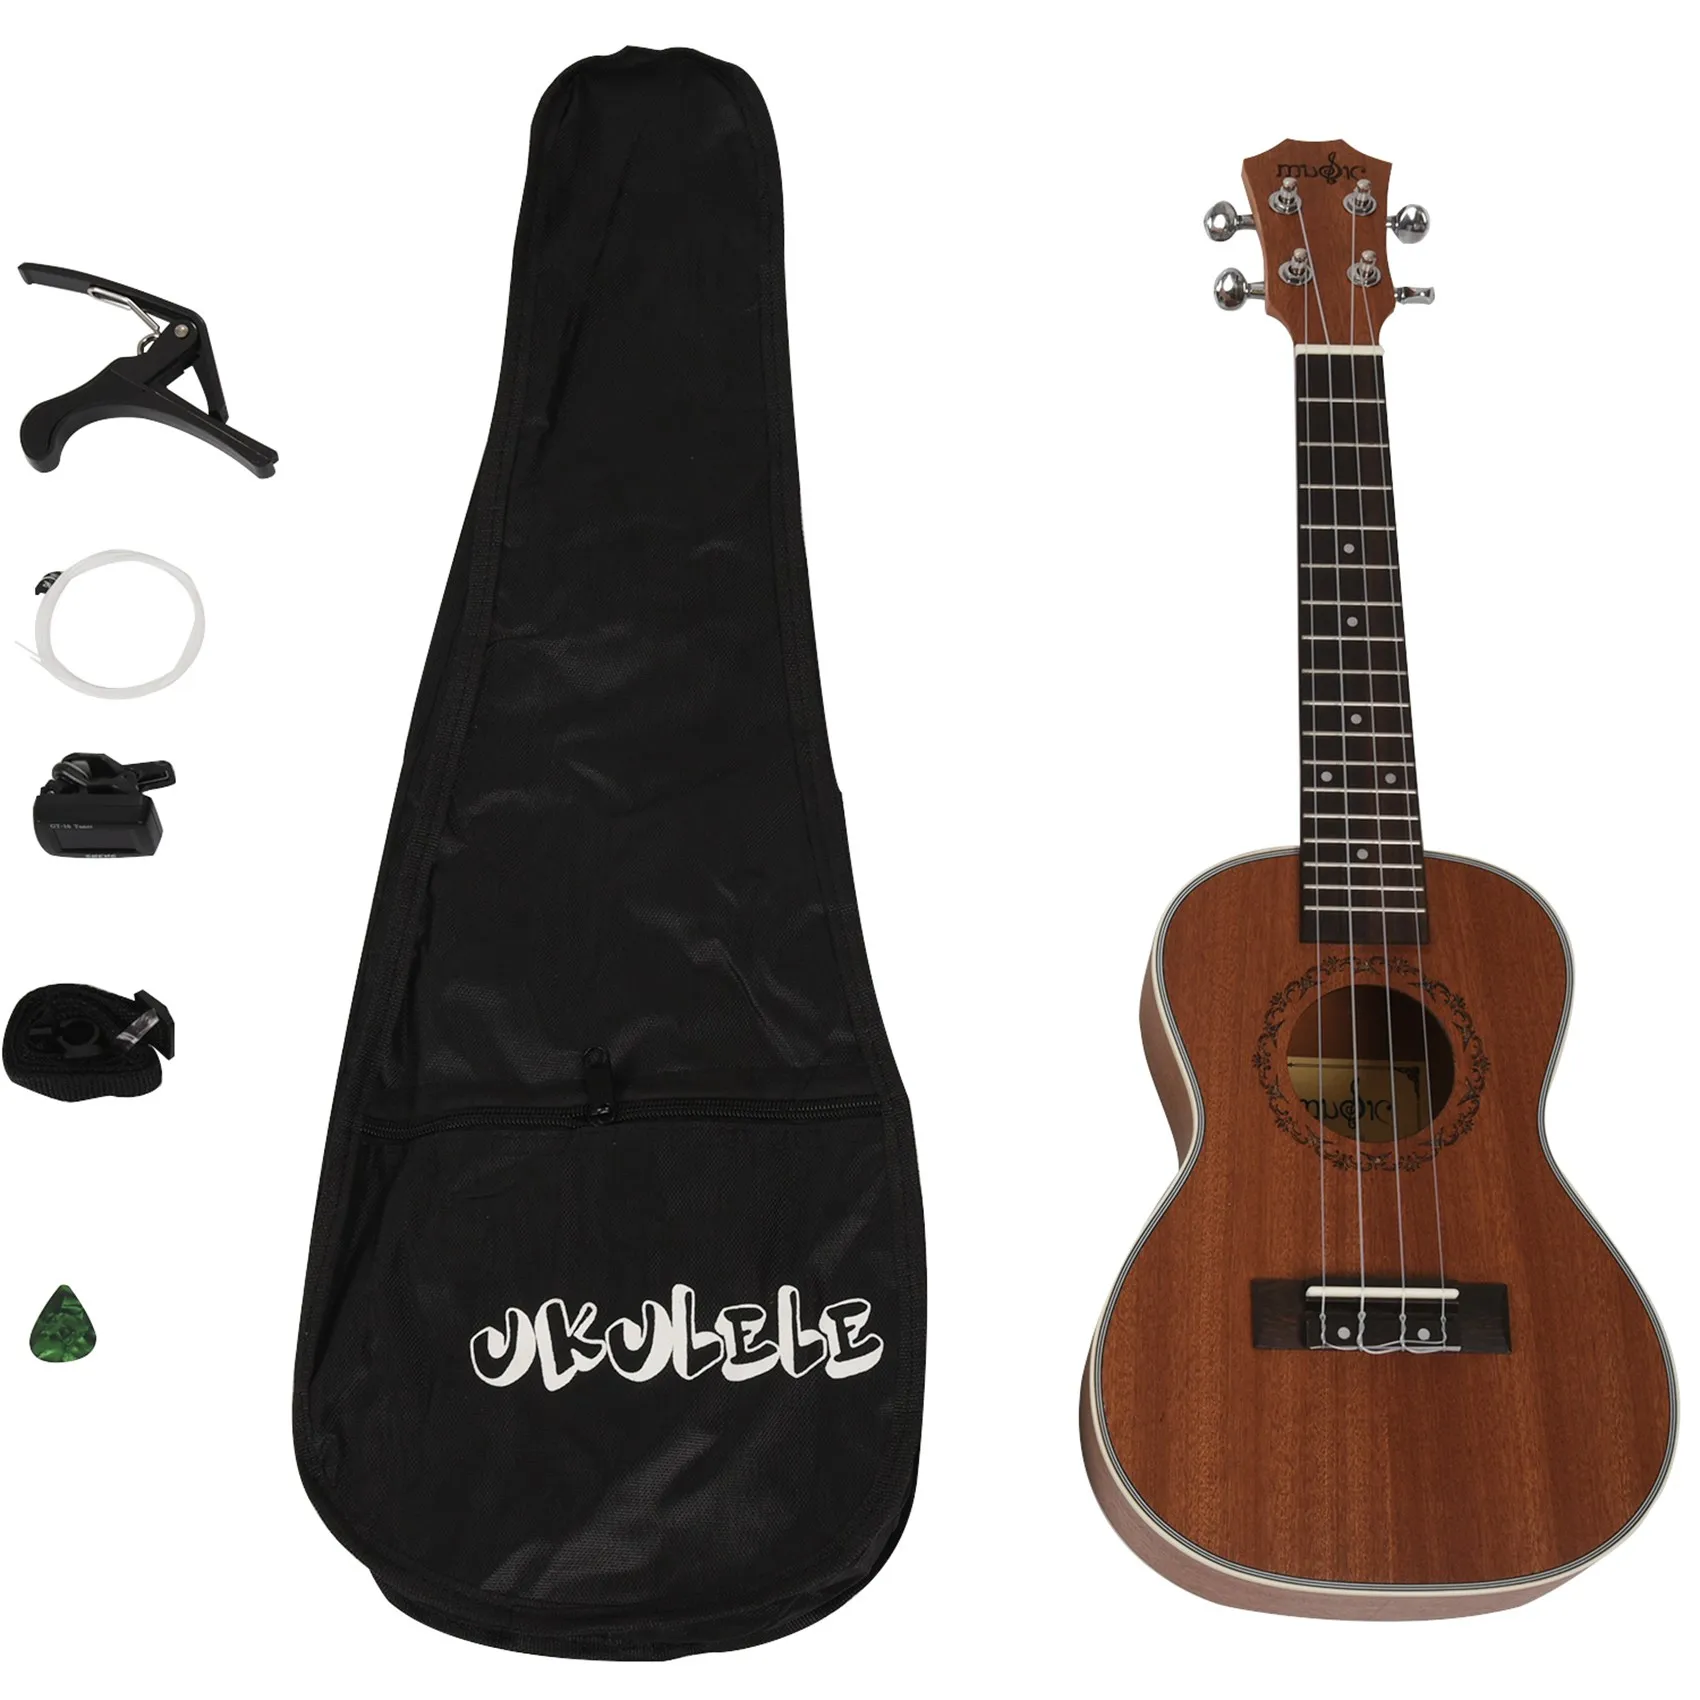 

23 дюйма, наборы укулеле для концерта, красное дерево, 4 струны, гавайская мини-гитара с сумкой для начинающих, музыкальные инструменты